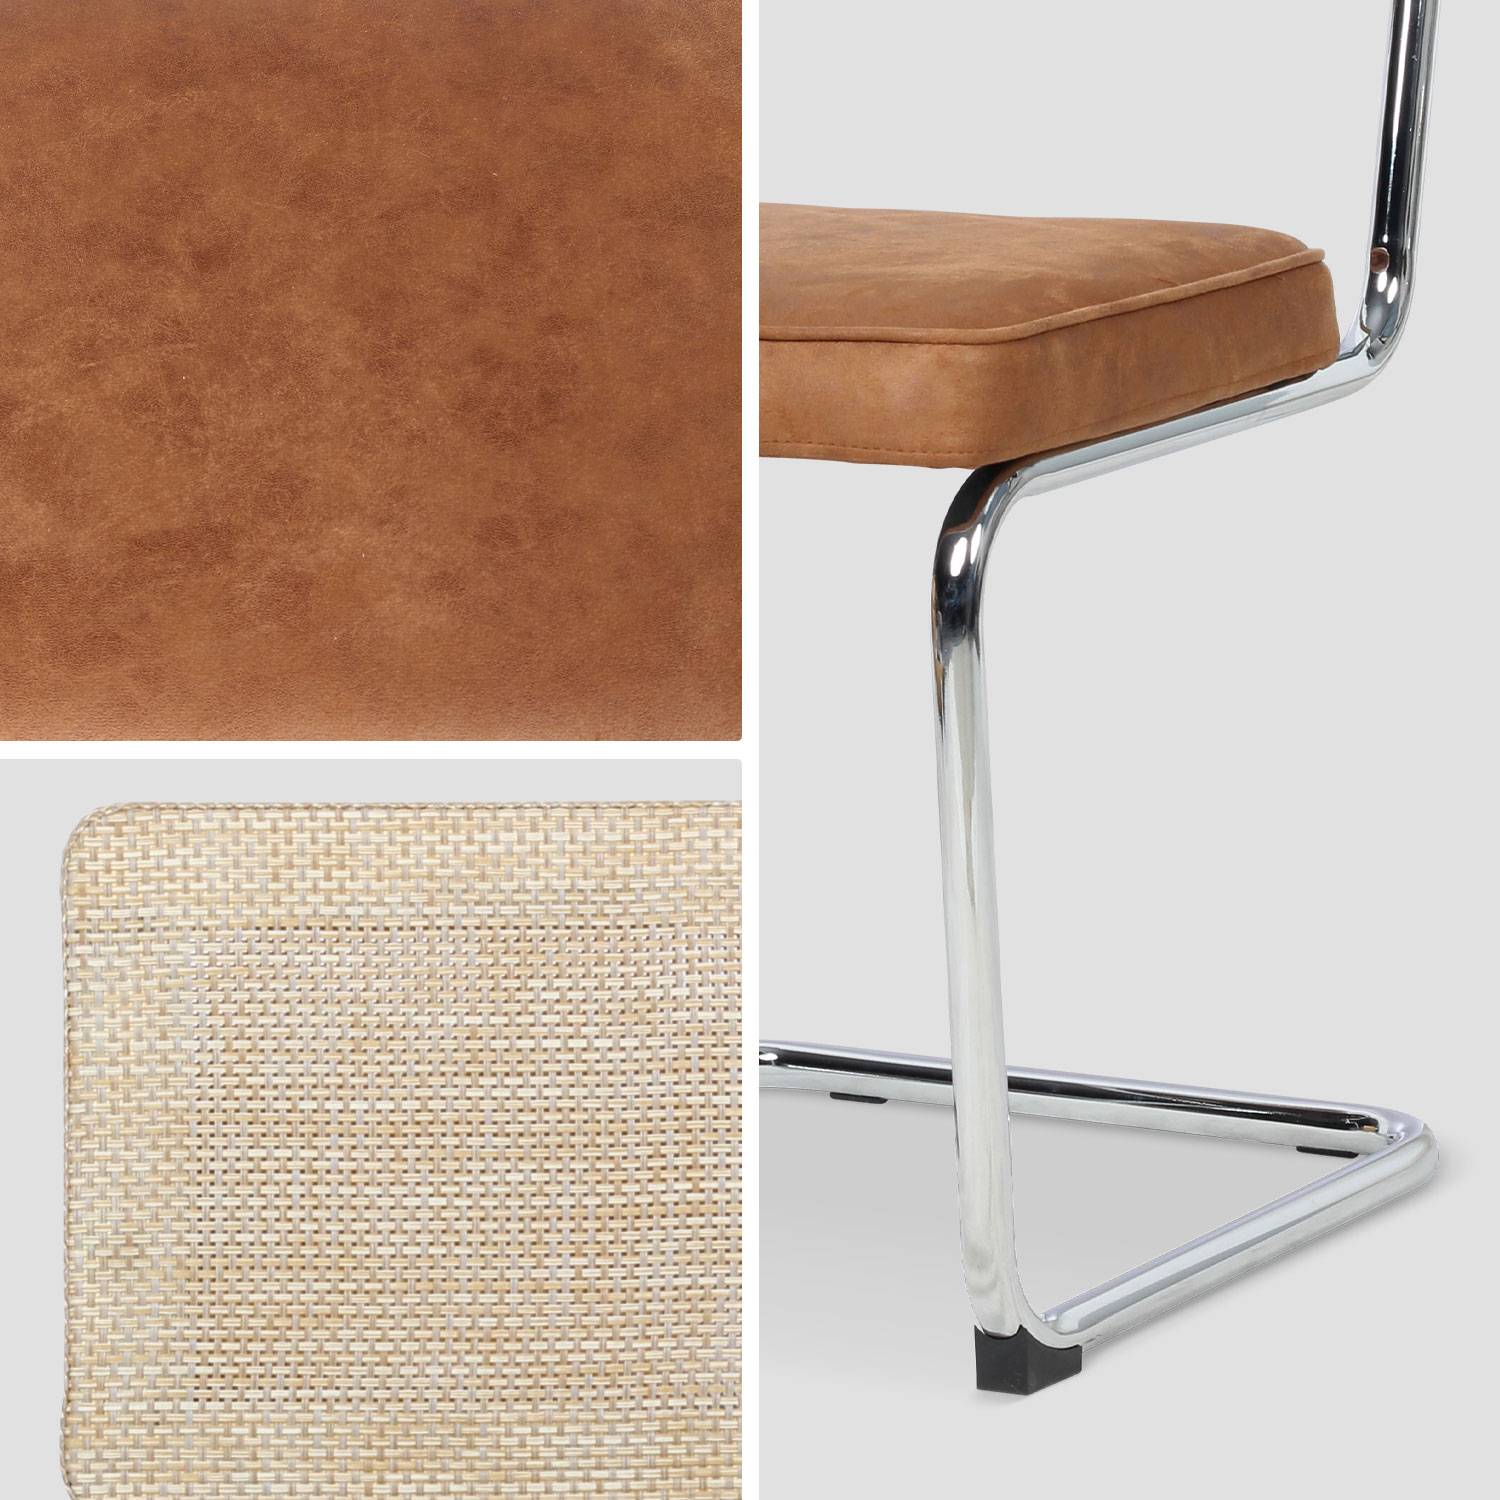 2 cadeiras cantilever - Maja - tecido castanho claro e resina com efeito rattan, 46 x 54,5 x 84,5 cm Photo7